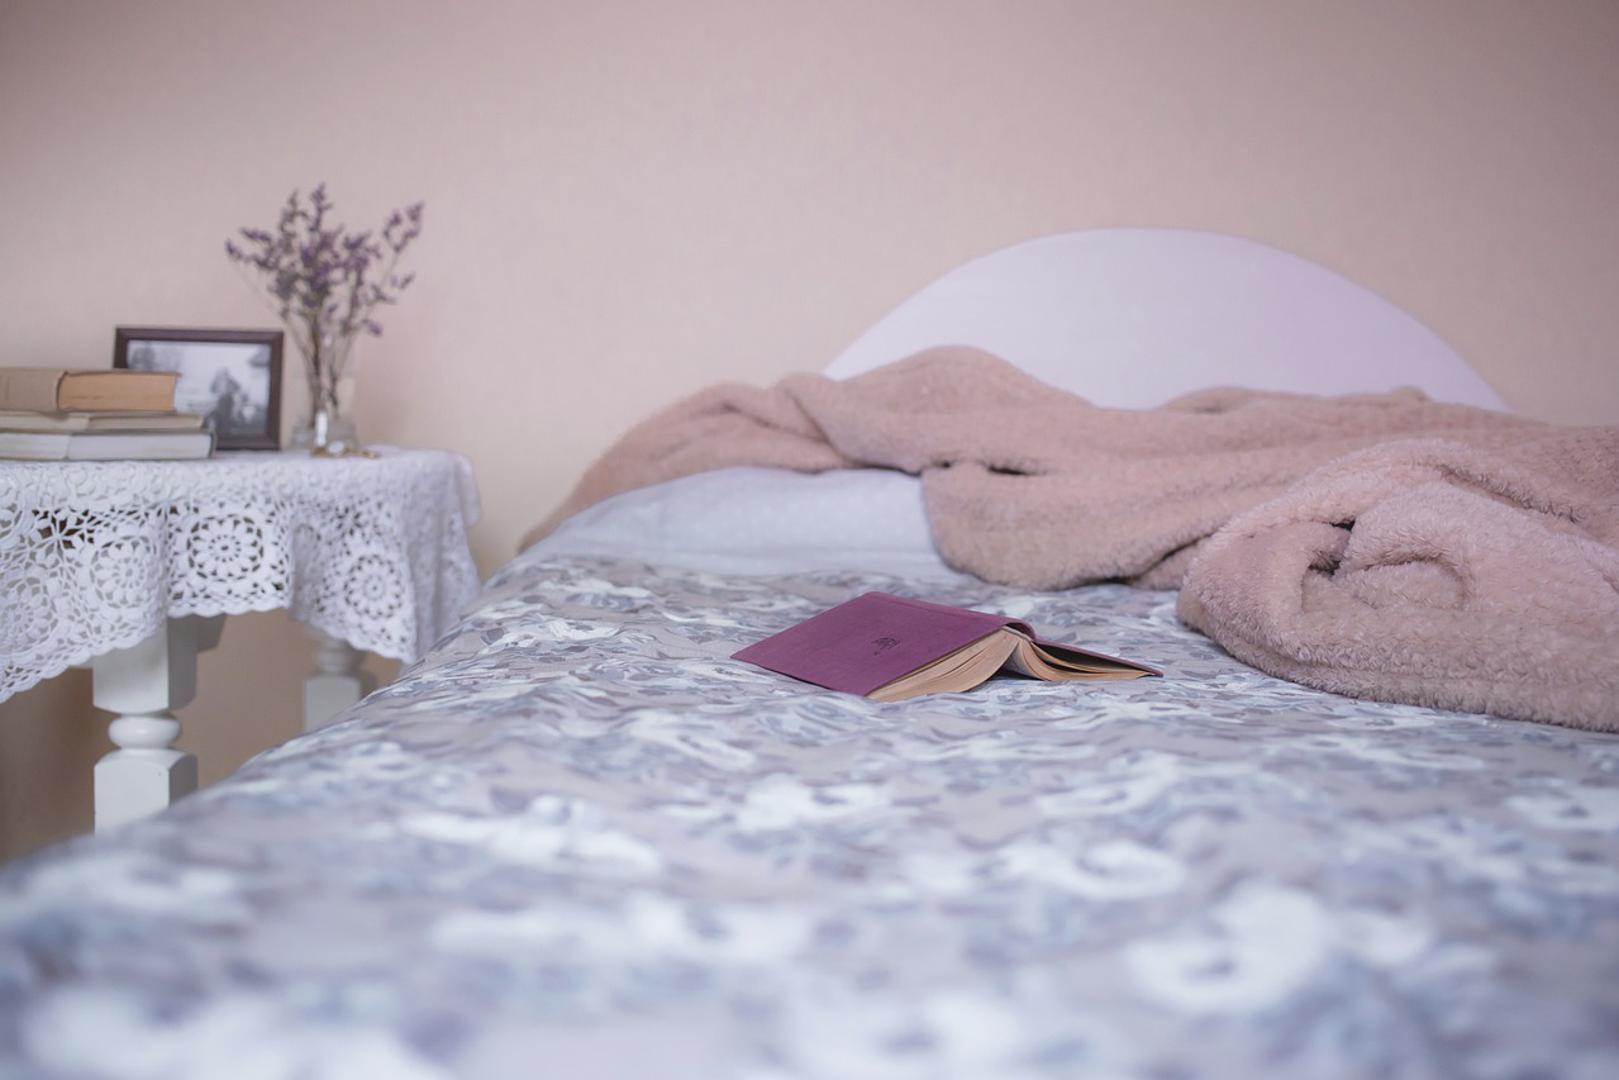 – Na kvalitetu spavanja mogu utjecati različiti čimbenici uključujući način života, zdravstvene uvjete, razine stresa i individualne razlike - kaže dr. sc. Šarić Jurić.
